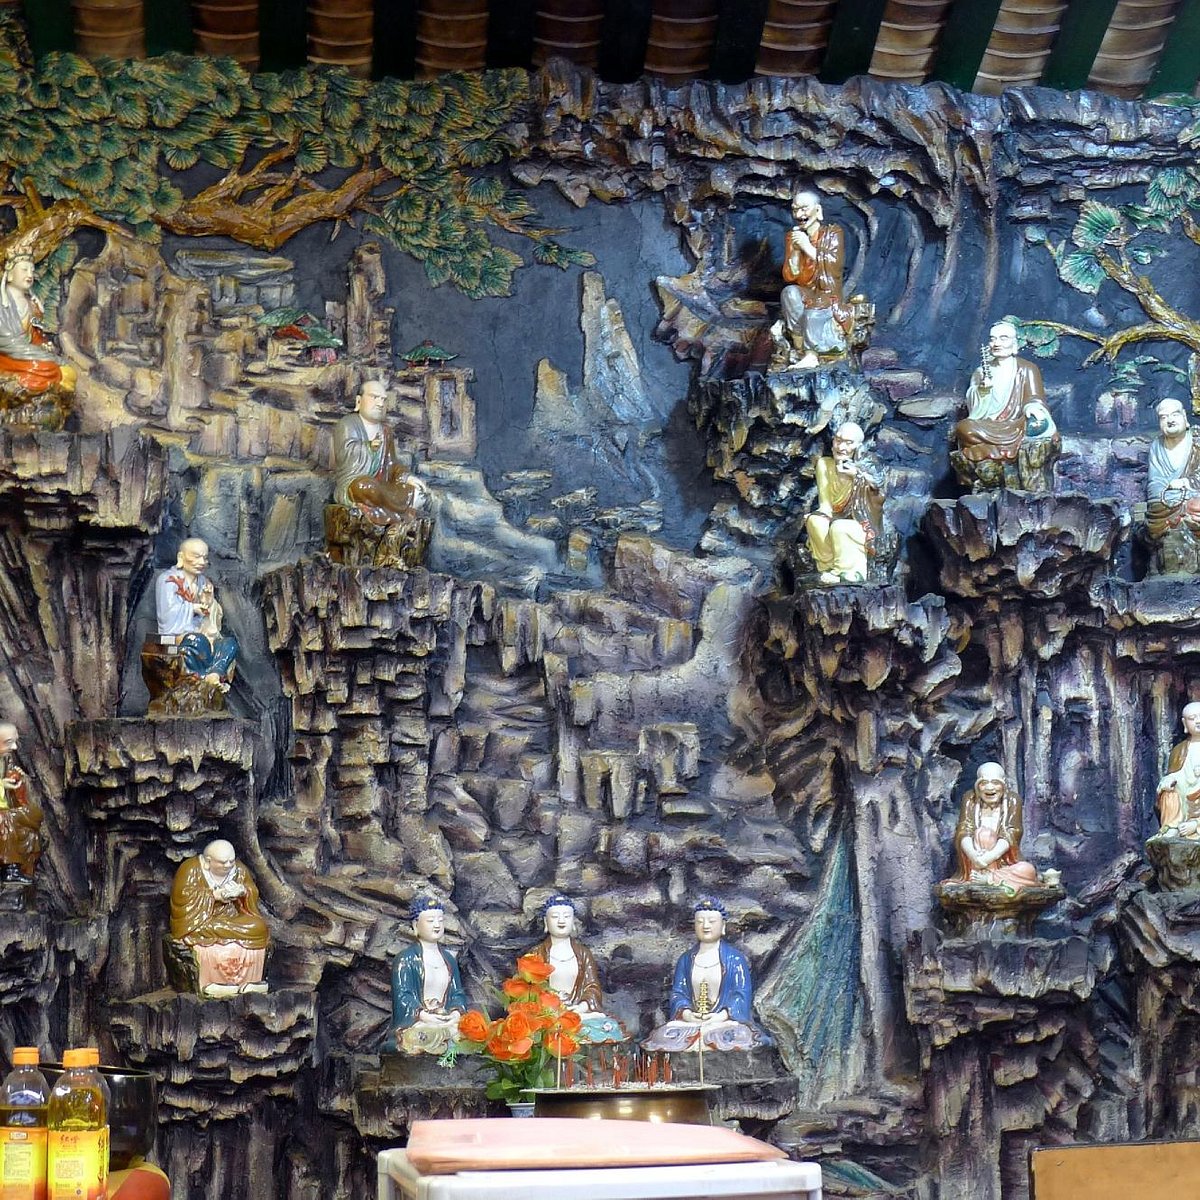 Đền Hầu Vương (Hau Wong Temple): Điểm đến tuyệt vời cho những ai yêu thích bầu không khí thanh tịnh, tôn giáo và văn hóa. Hình ảnh sẽ đưa bạn đến từng góc nhỏ của đền, cảm nhận từng nét đẹp tinh tế và yên bình trong lễ tổ chức tôn giáo. 